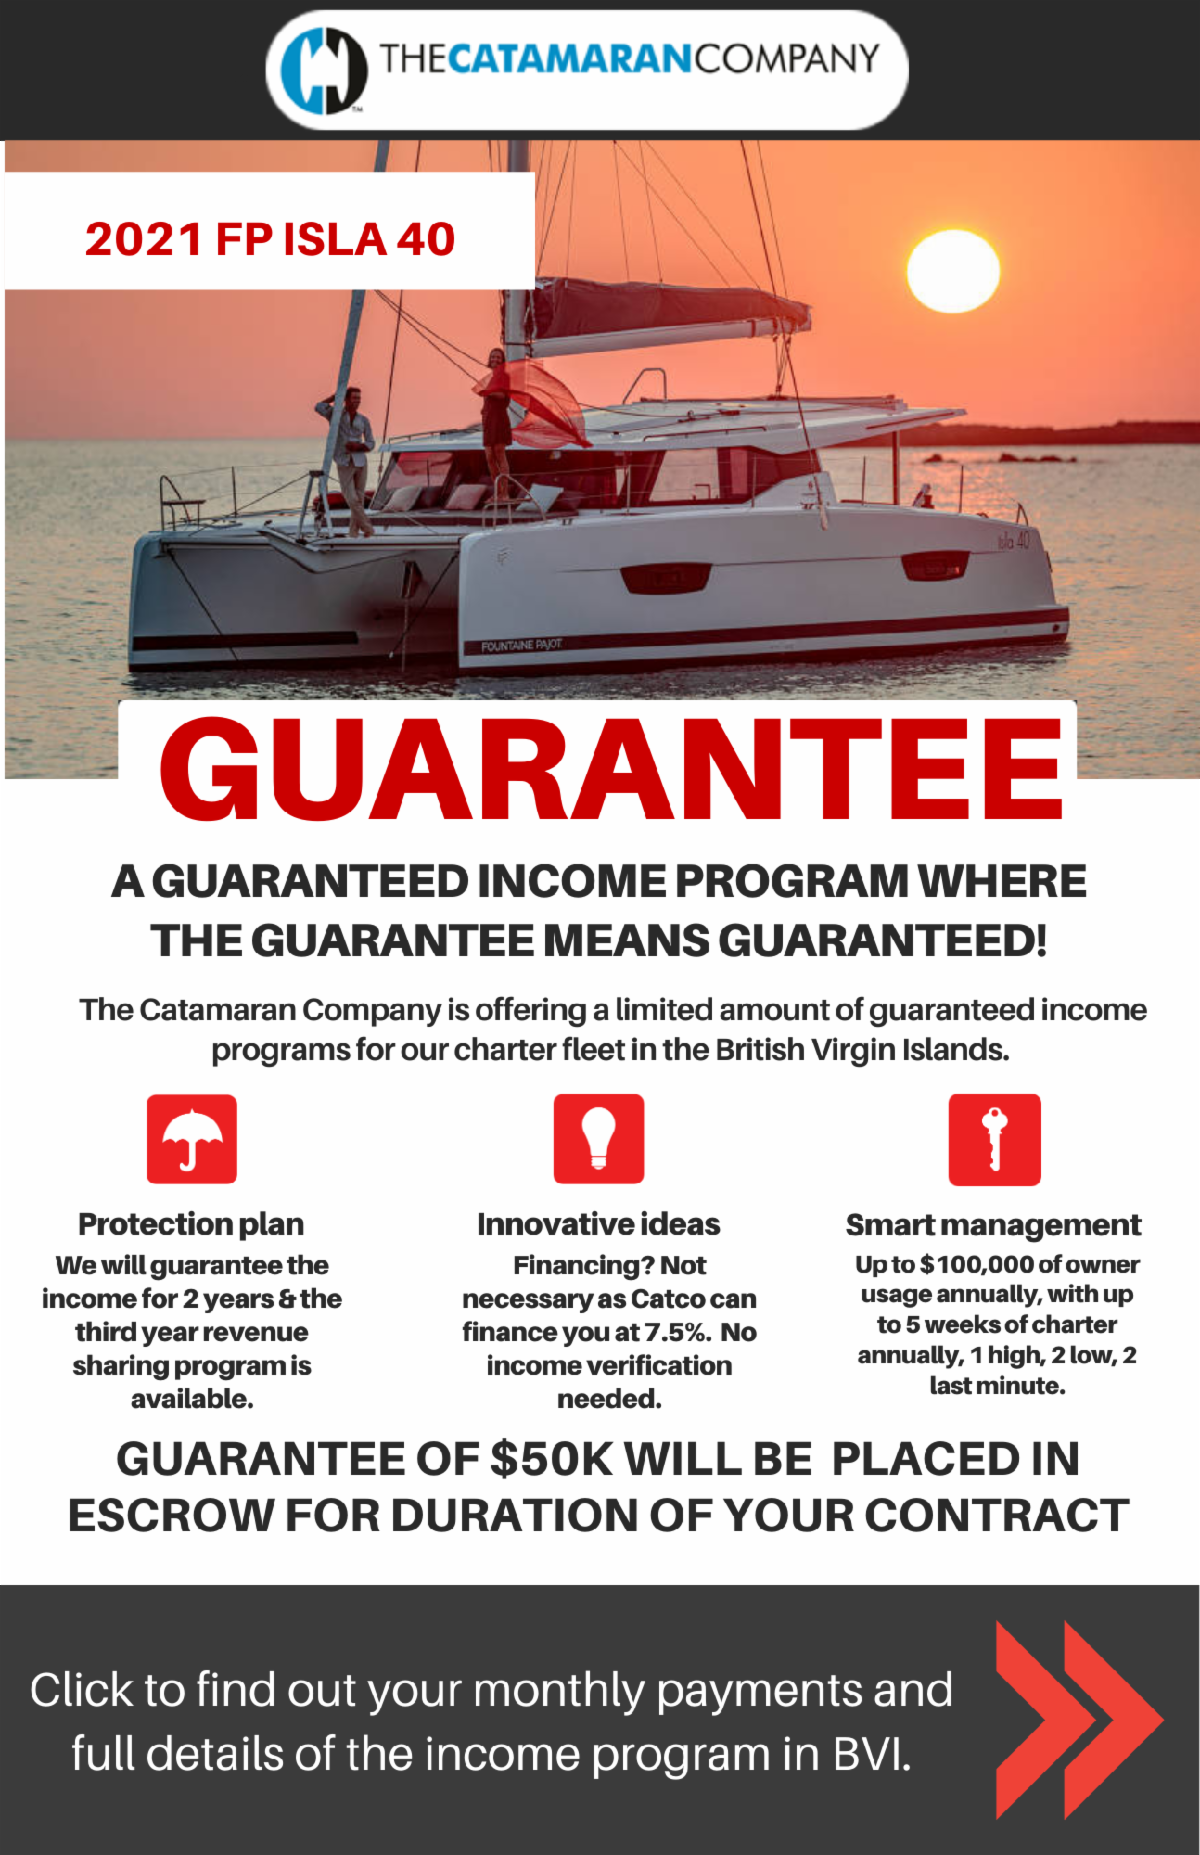 2021 FP ISLA 40 - Guaranteed income program where the guarantee means guaranteed!